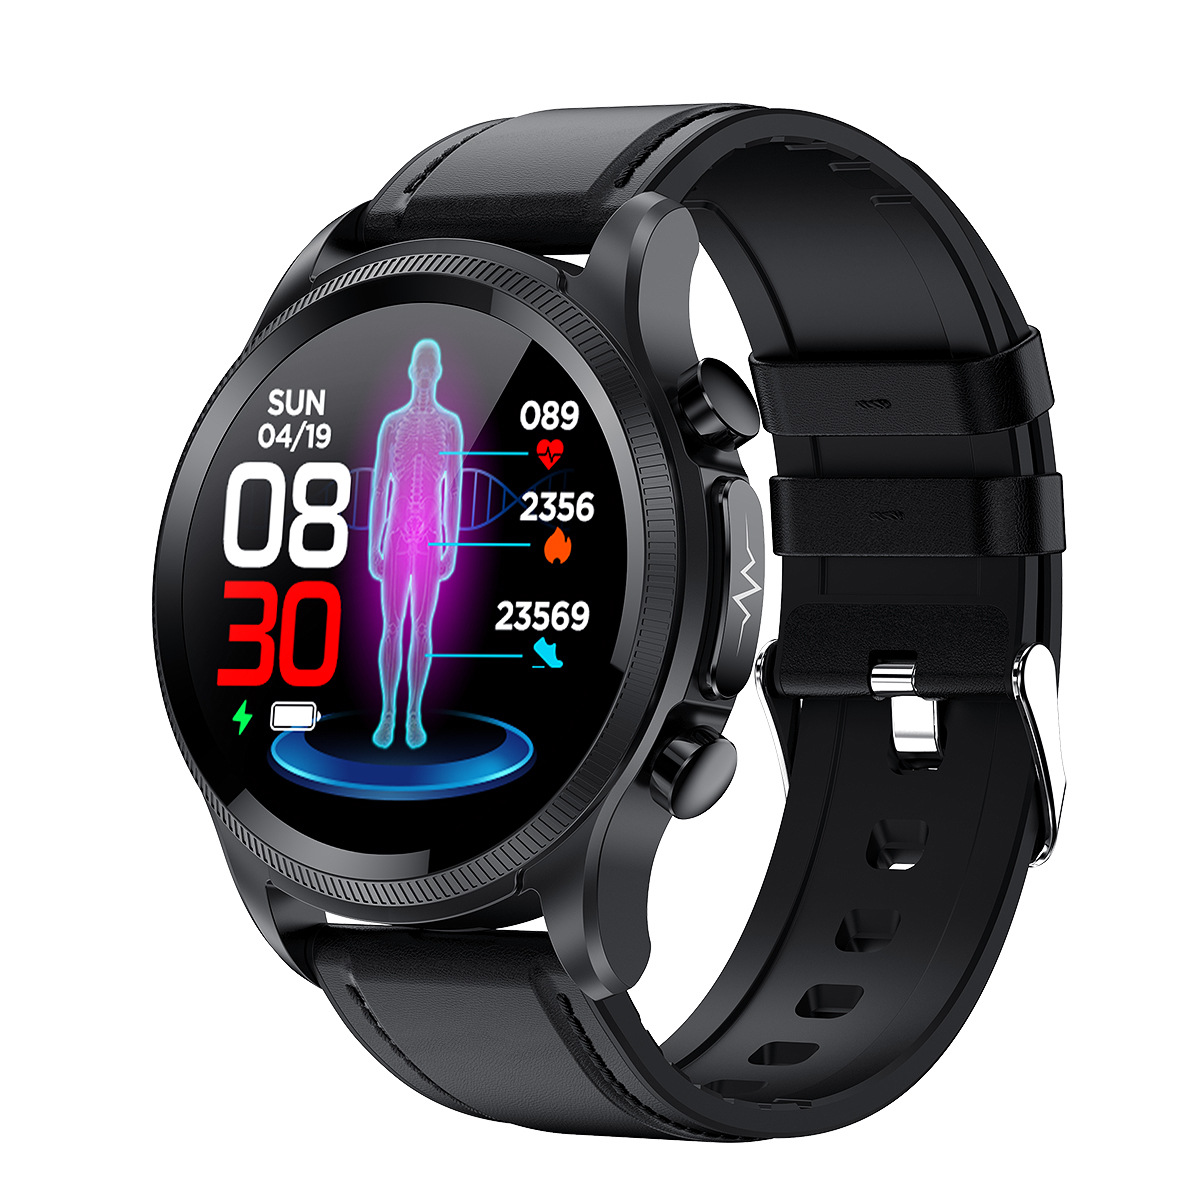 Männer Smart Uhr Smartwatch Wasserdichte Bluetooth Armband Sport Fitness Tracker Blutdruck Herz Rate Monitor Uhren Für Android ios